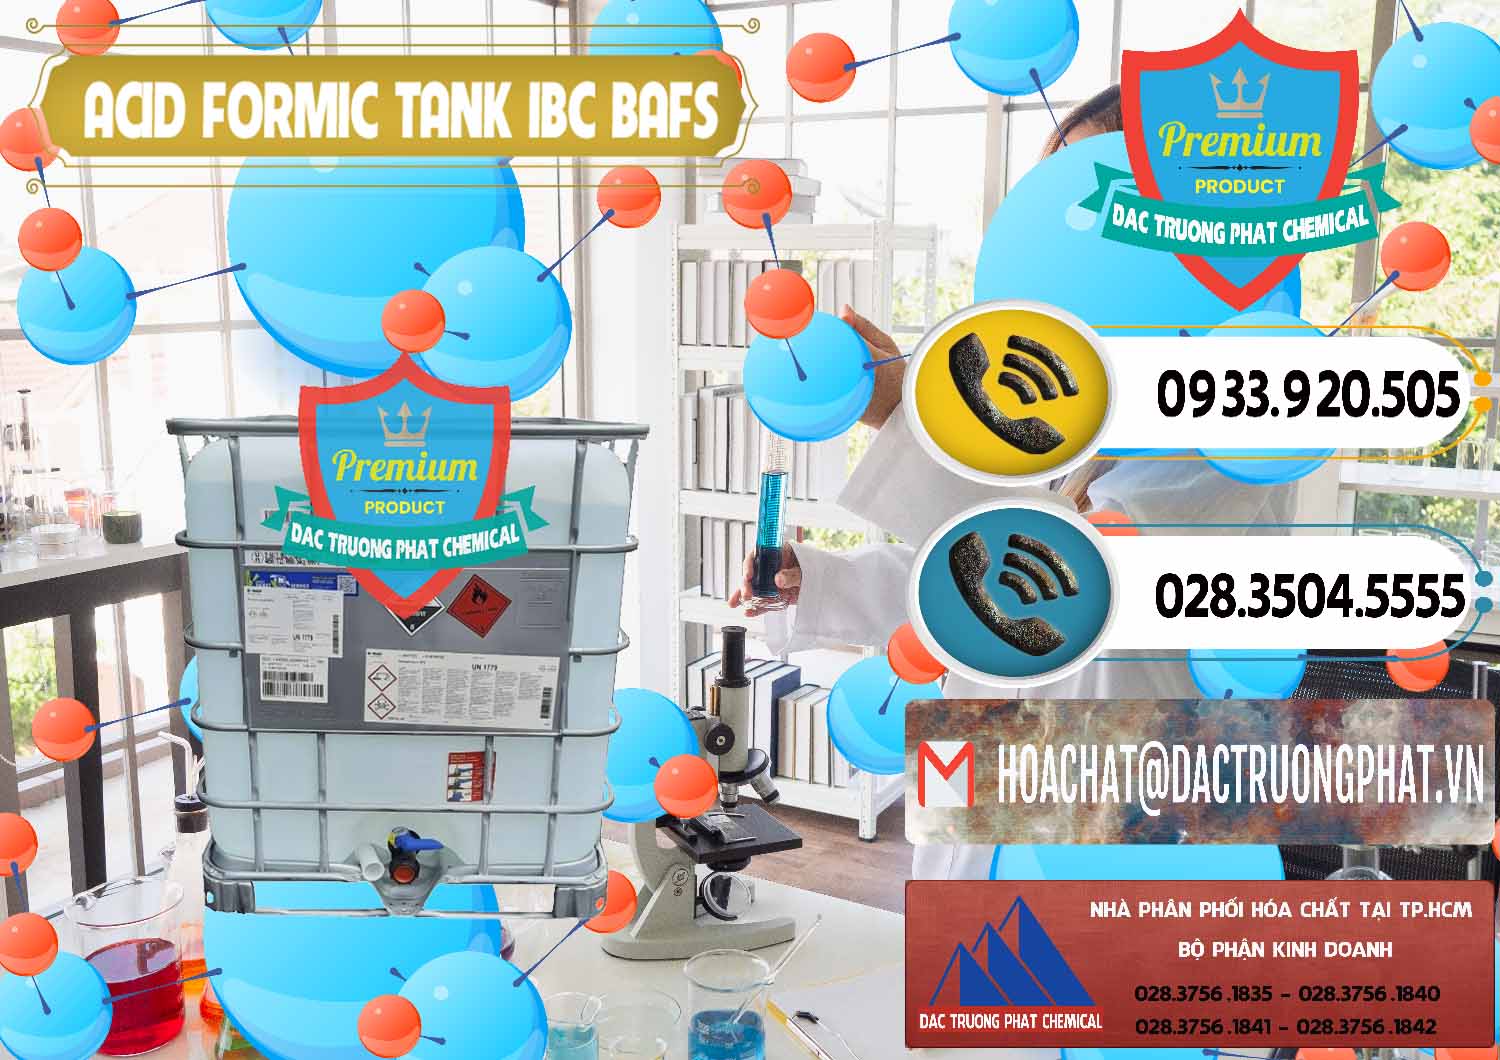 Nơi bán và phân phối Acid Formic - Axit Formic Tank - Bồn IBC BASF Đức - 0366 - Công ty kinh doanh ( cung cấp ) hóa chất tại TP.HCM - hoachatdetnhuom.vn